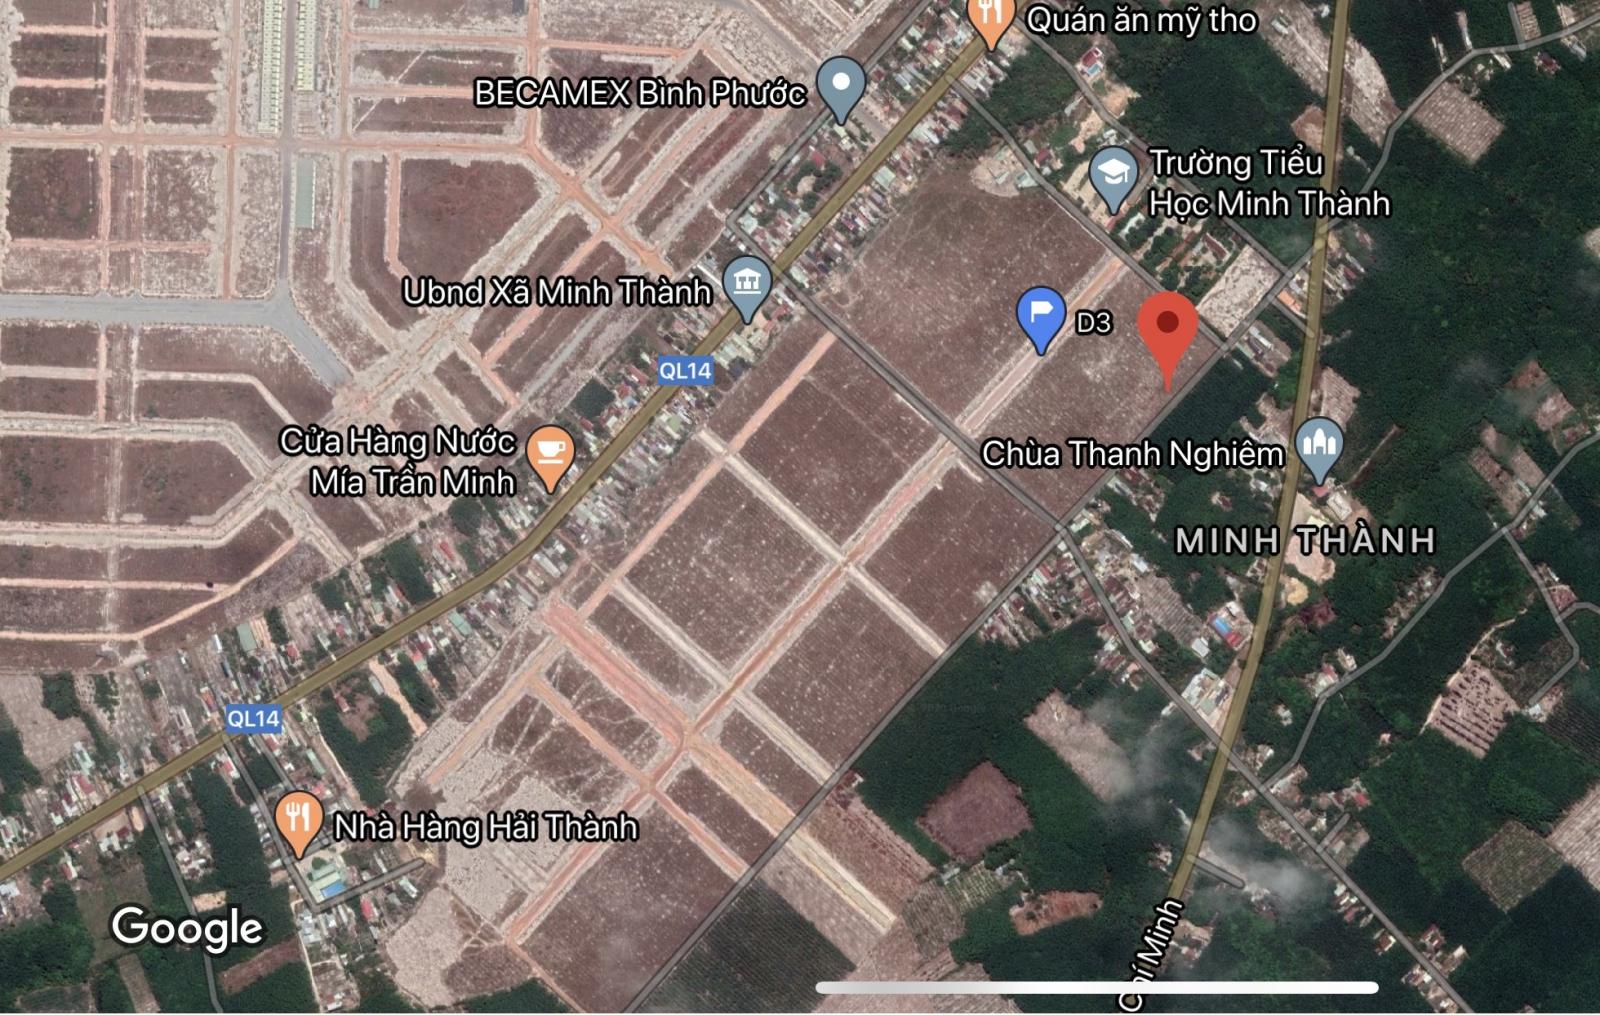 Bán TDC Becamex Bình Phước gần QL14. Đường D3 rộng 25m, giá thu hồi vốn. LH 0962.454.040